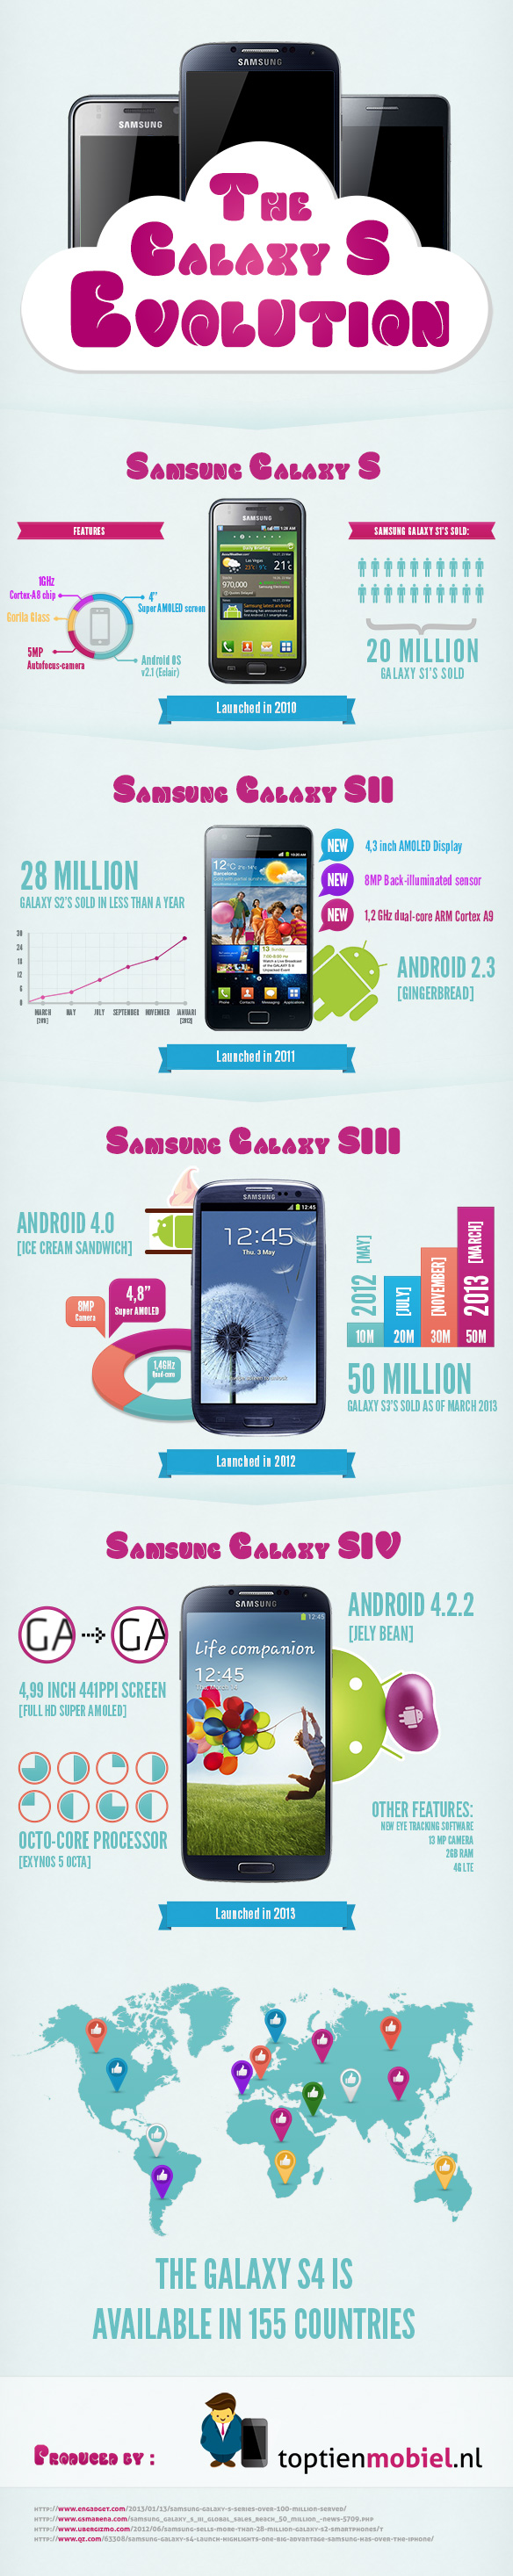   Samsung Galaxy S - 